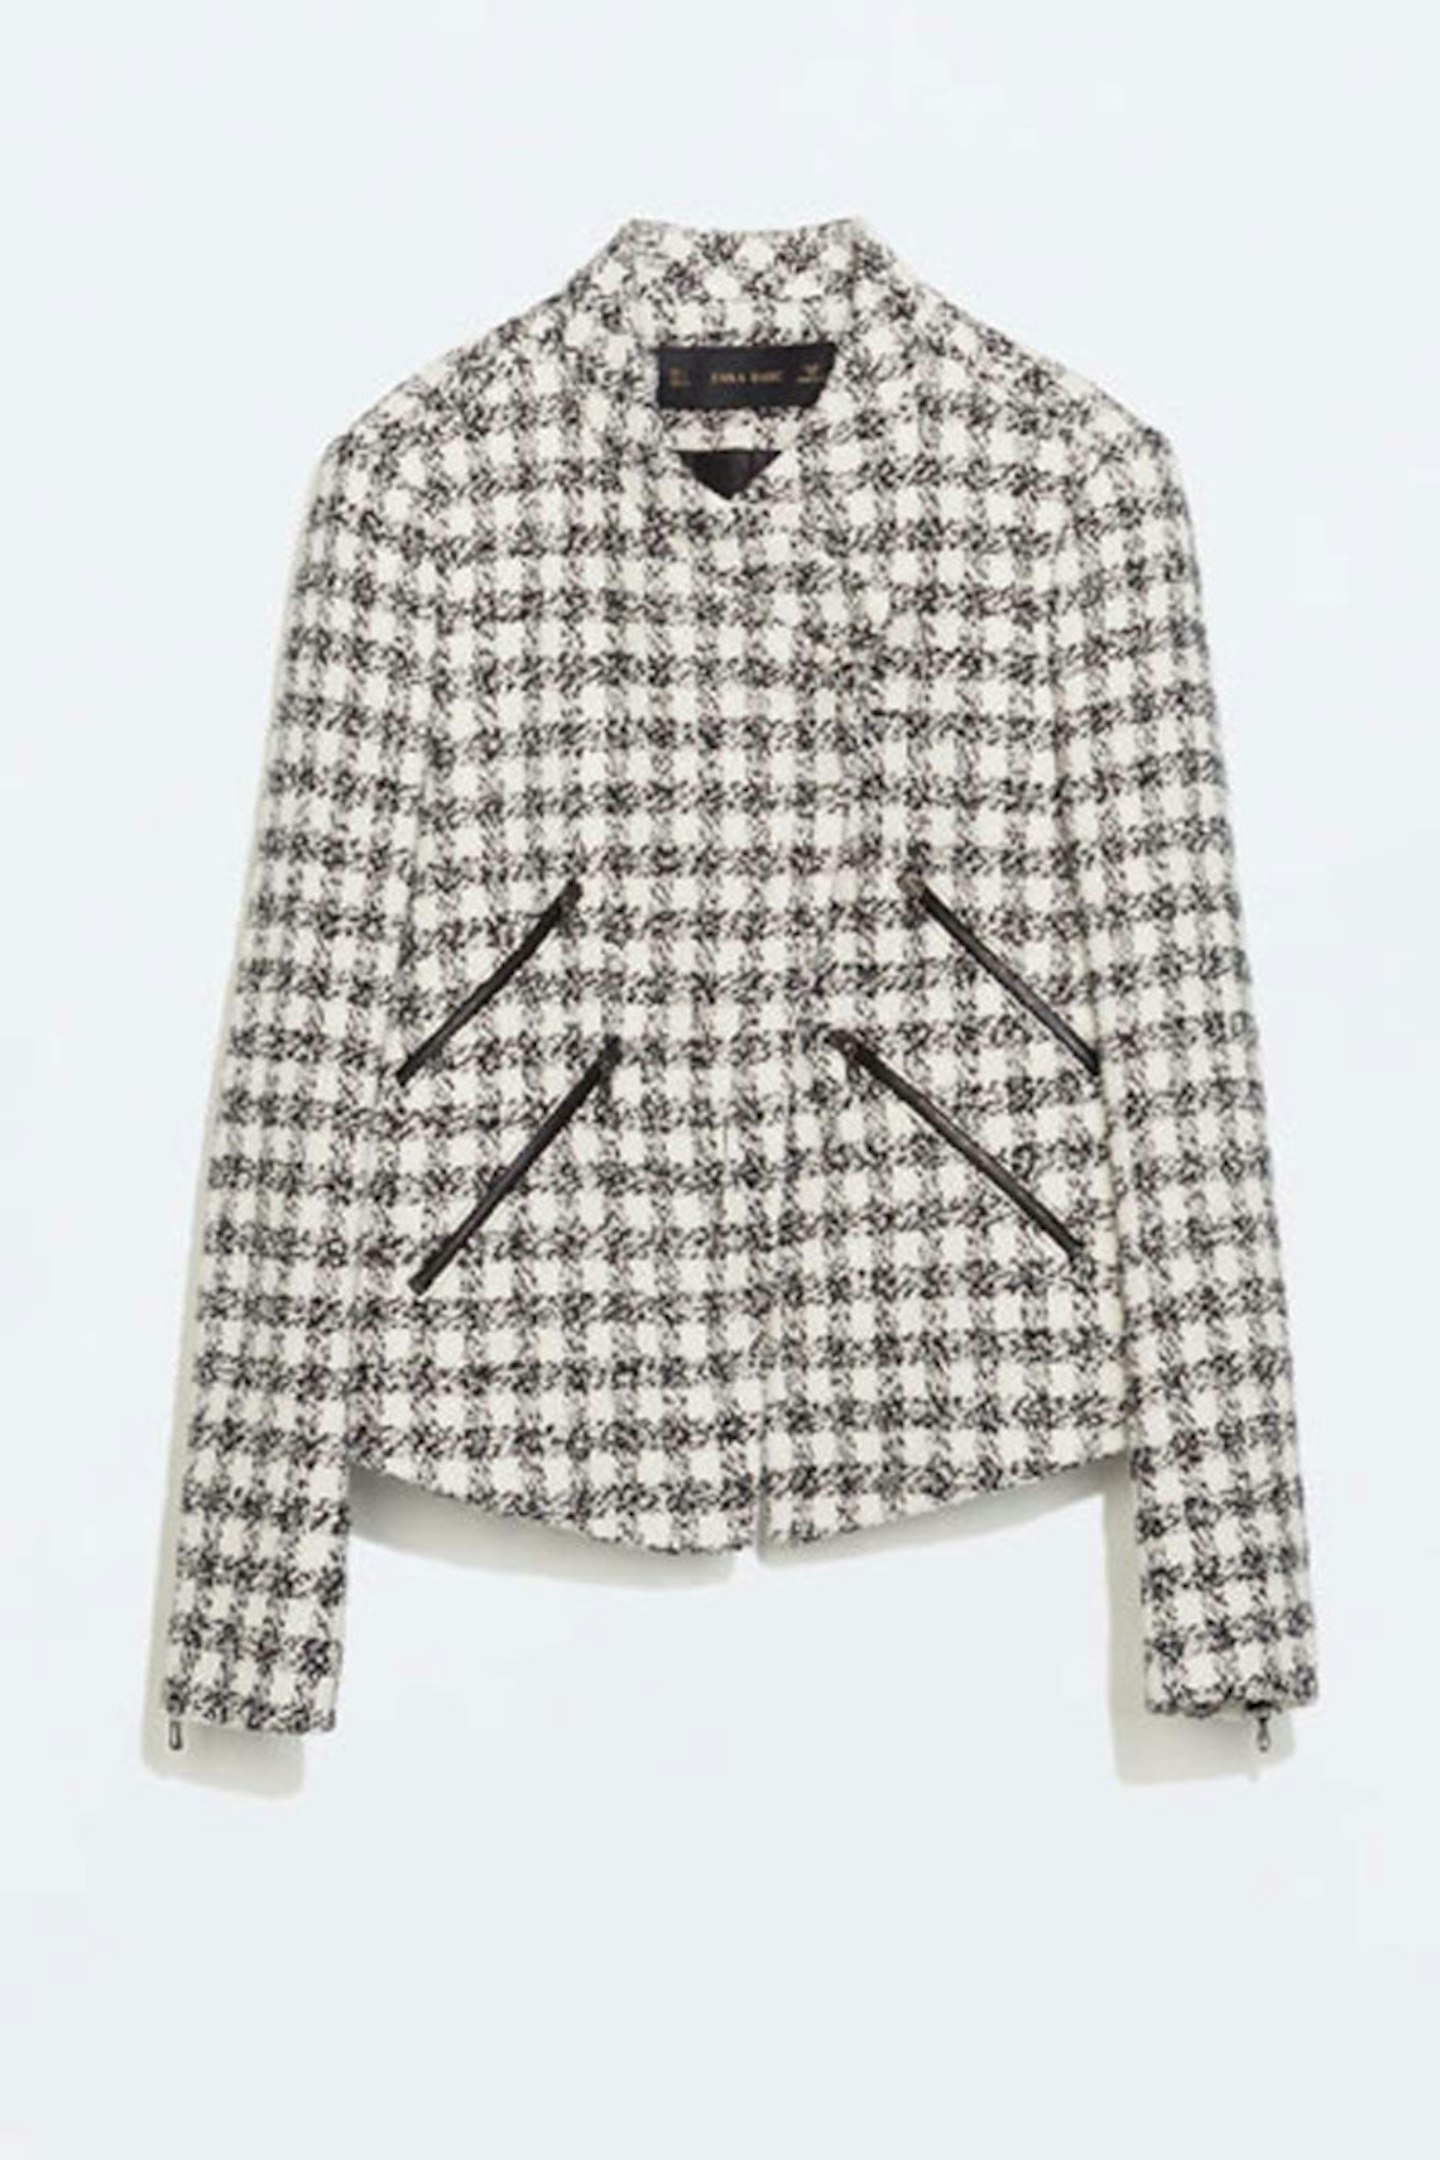 Monochrome Checked Blazer, £69.99, Zara